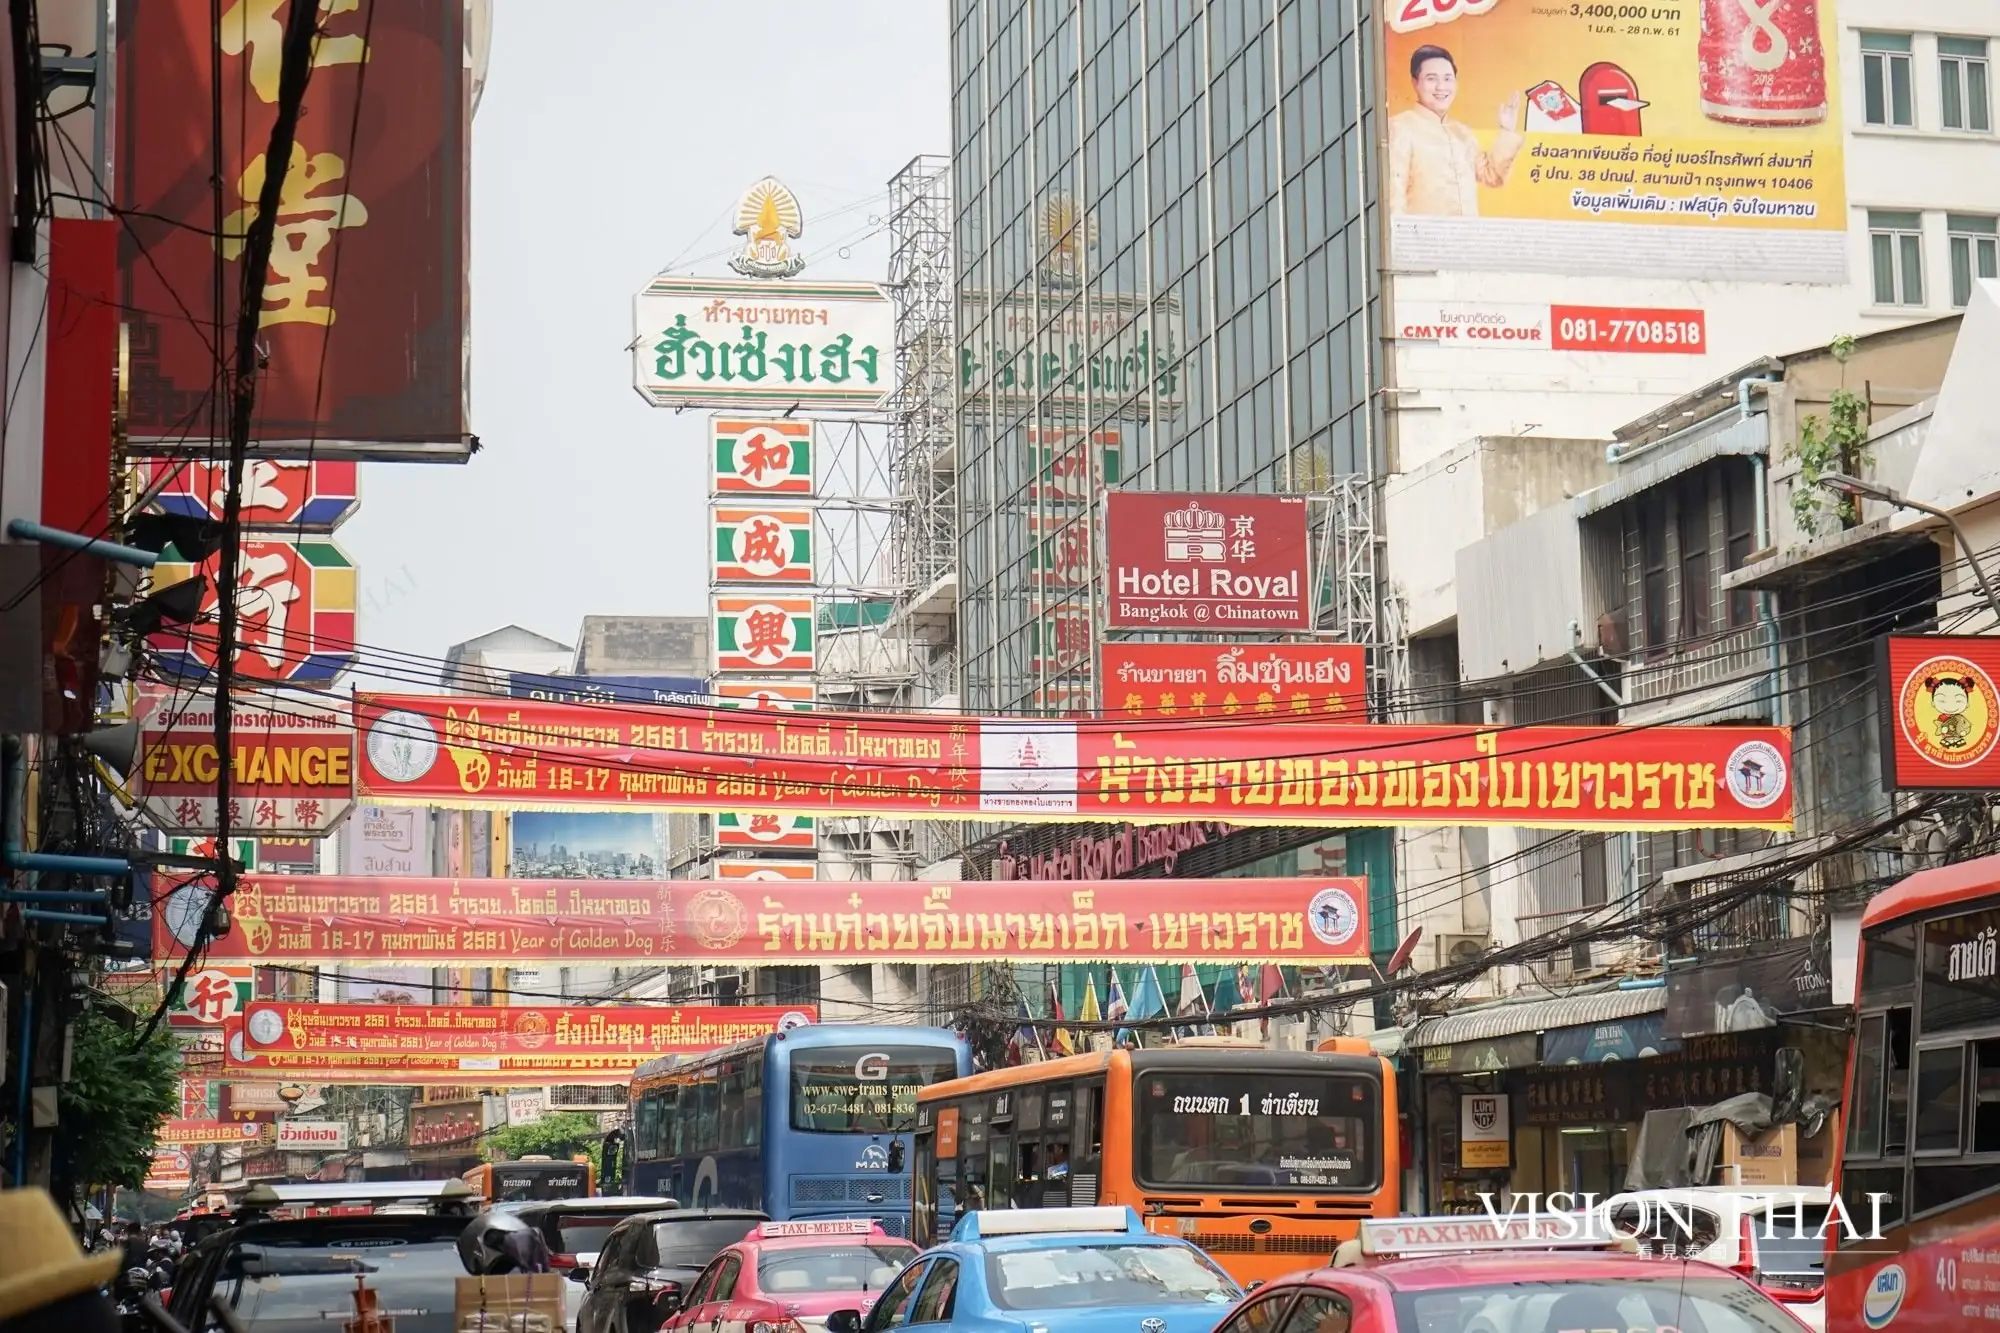 曼谷中國城 Chinatown 體驗泰式中國風